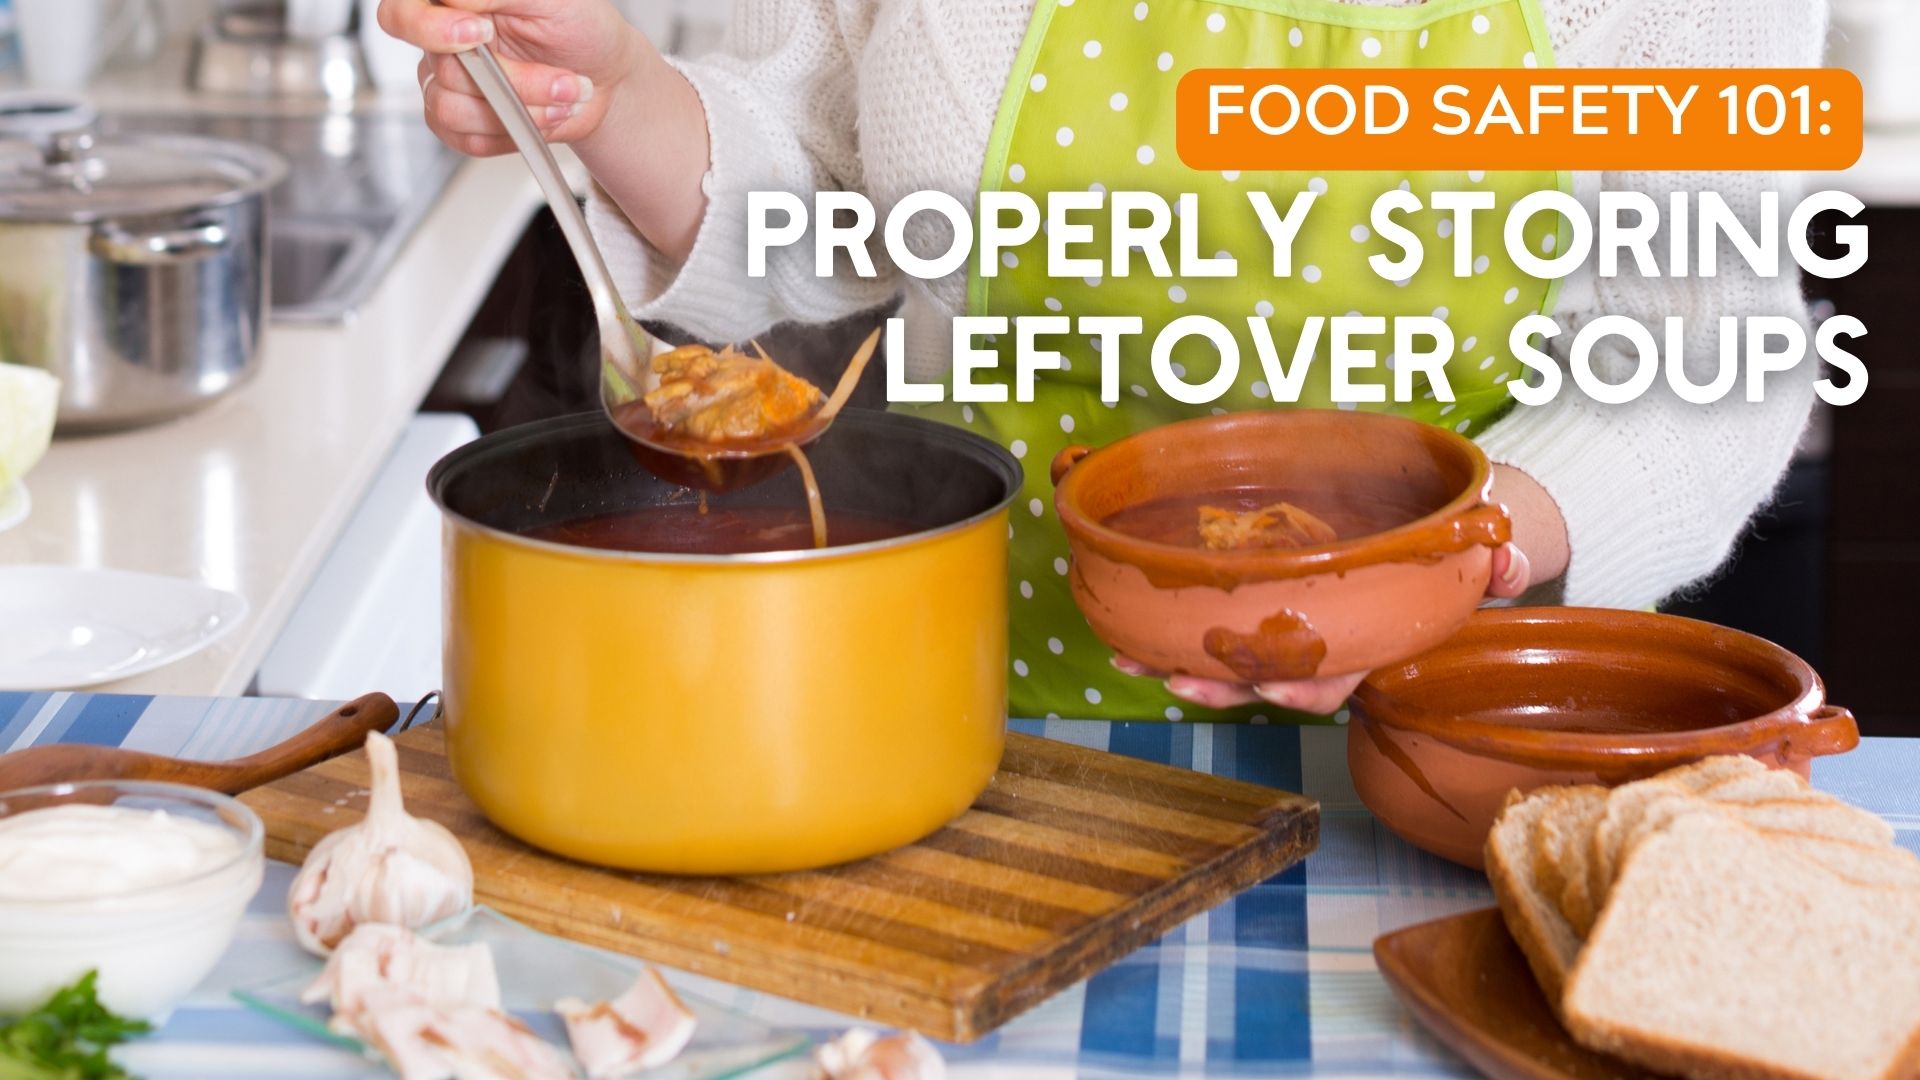 https://cdn11.bigcommerce.com/s-fmduym/product_images/uploaded_images/food-safety-101-properly-storing-leftover-soups.jpg